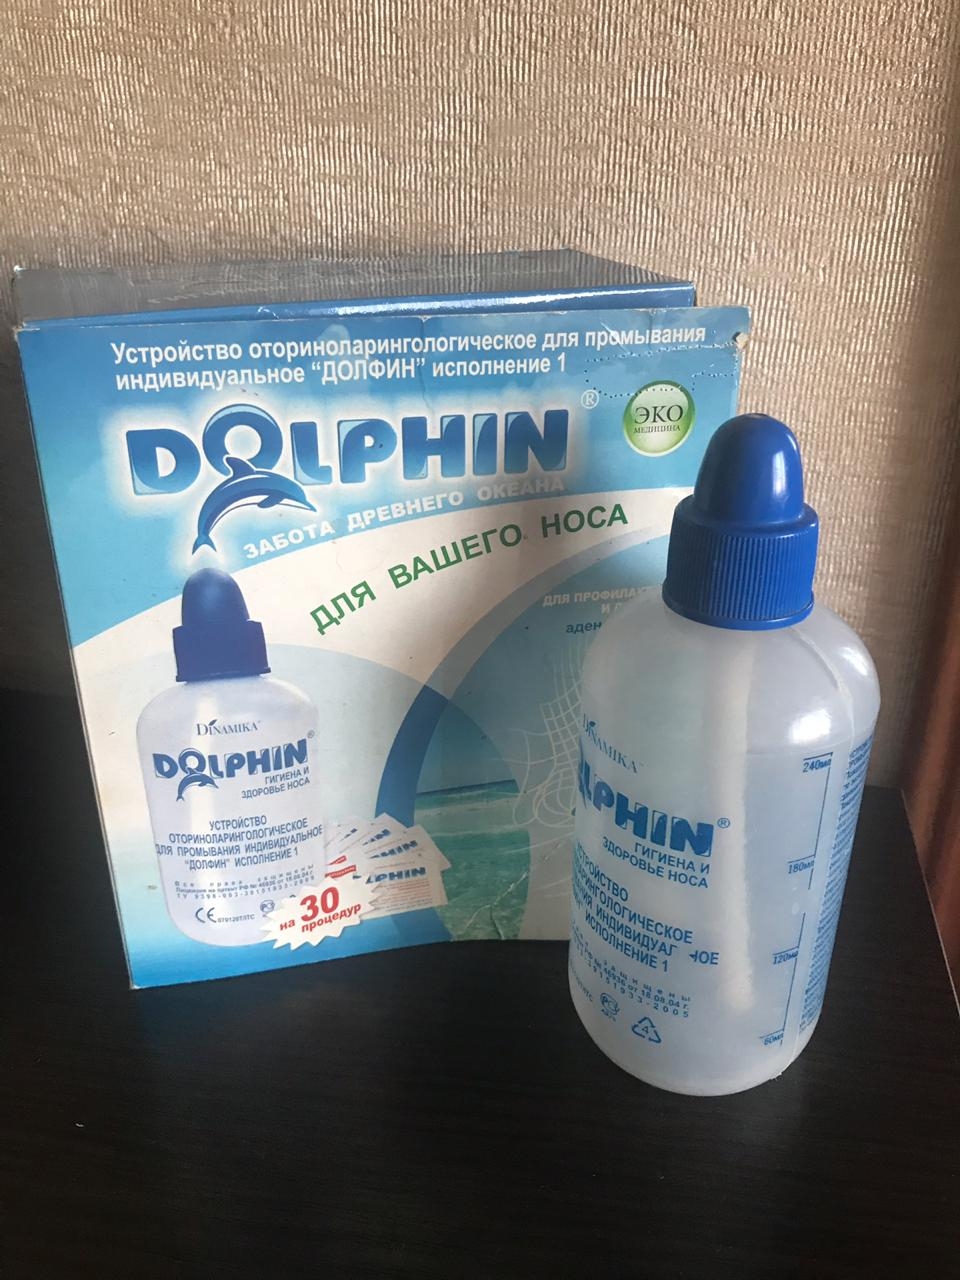 Долфин для промывания носа отзывы взрослых. Средство для промывания носа Долфин. Комплекс Долфин для промывания носа. Прибор для промывания носа Долфин. Долфин средство для промывания носа 2г 30.